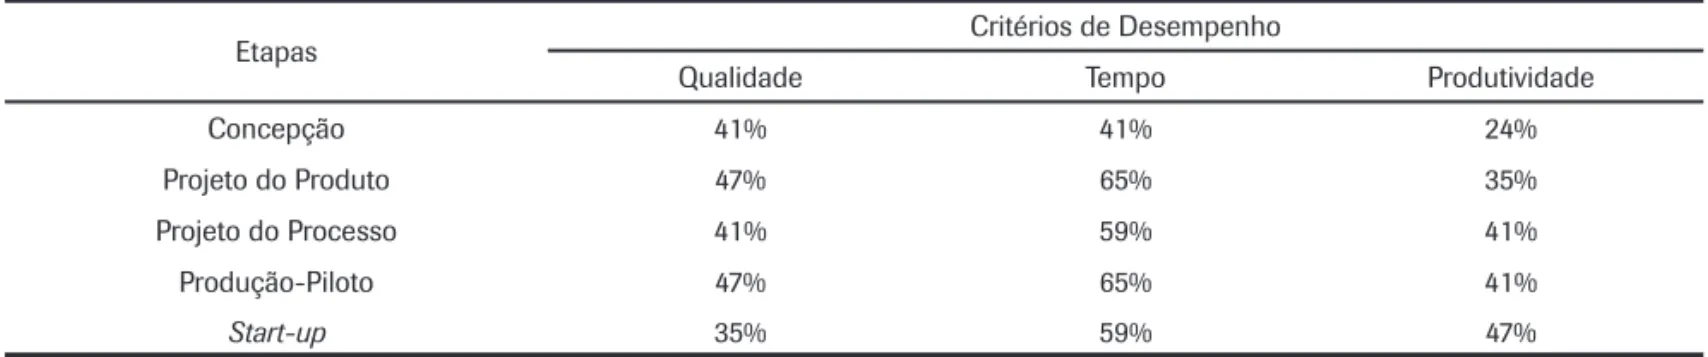 Tabela 3: Relação entre etapas do PDP e os critérios de desempenho  (% das empresas que utilizam o critério de desempenho).